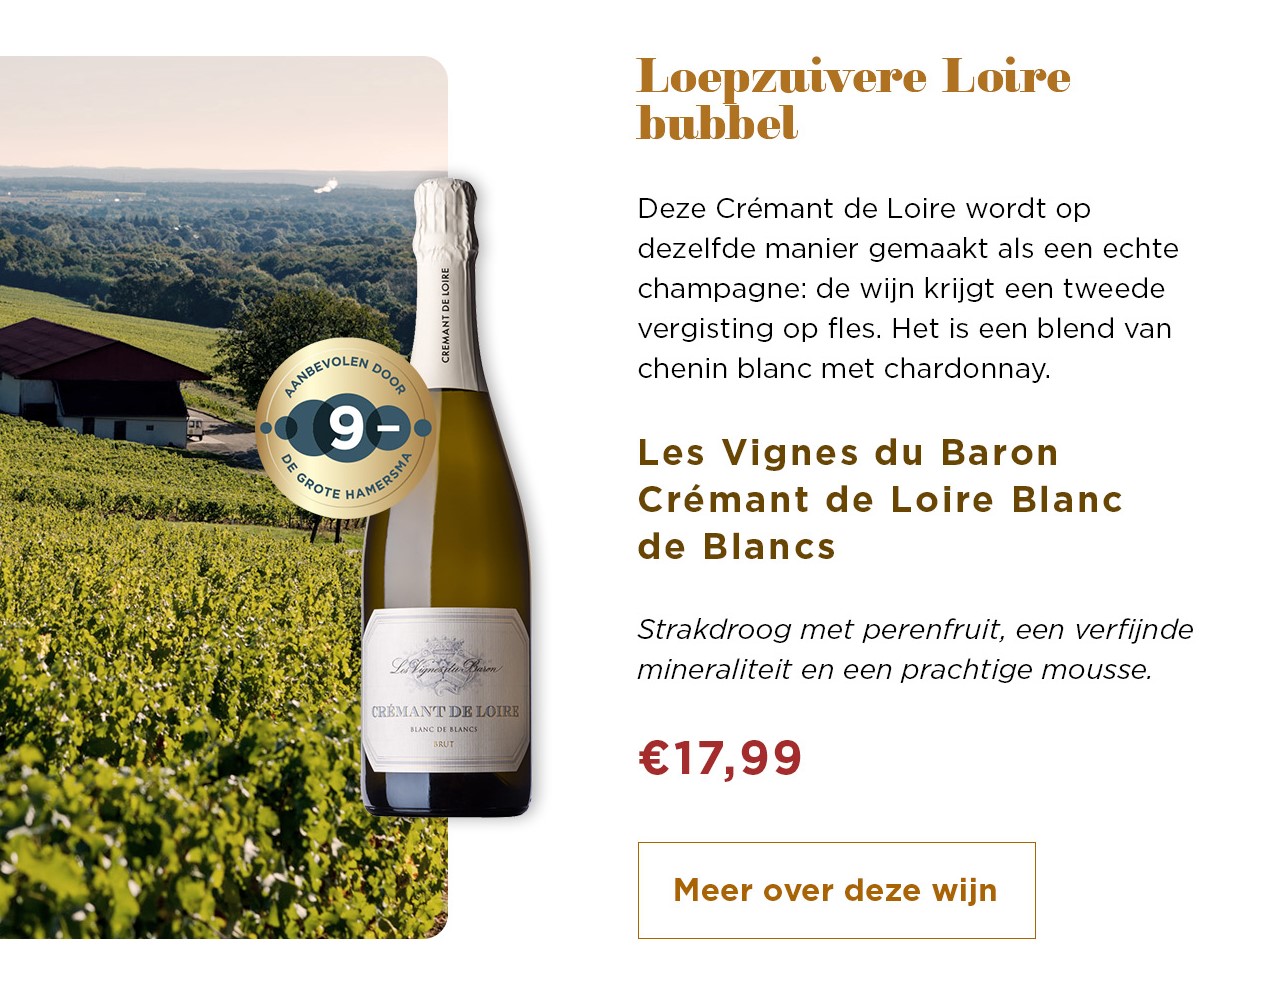 Loepzuivere Loire bubbel | Les Vignes du Baron Cremant de Loire Blanc de Blancs voor € 17,99 | Meer over deze wijn